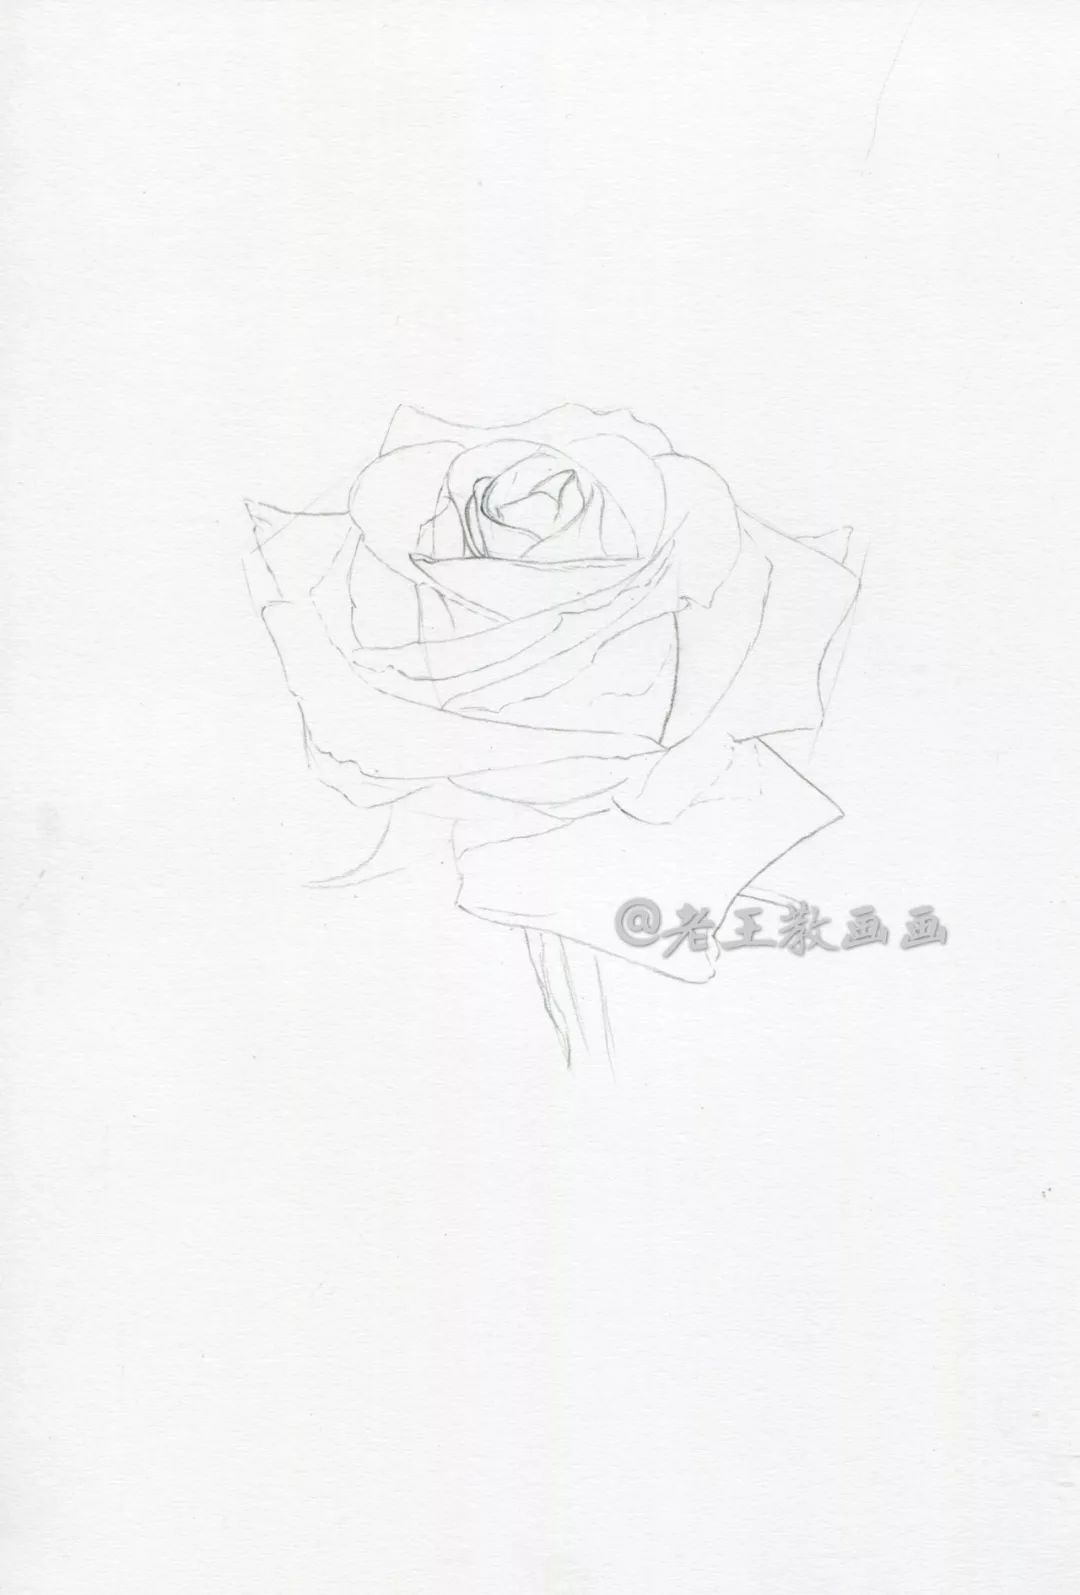 玫瑰花简笔铅笔画图片